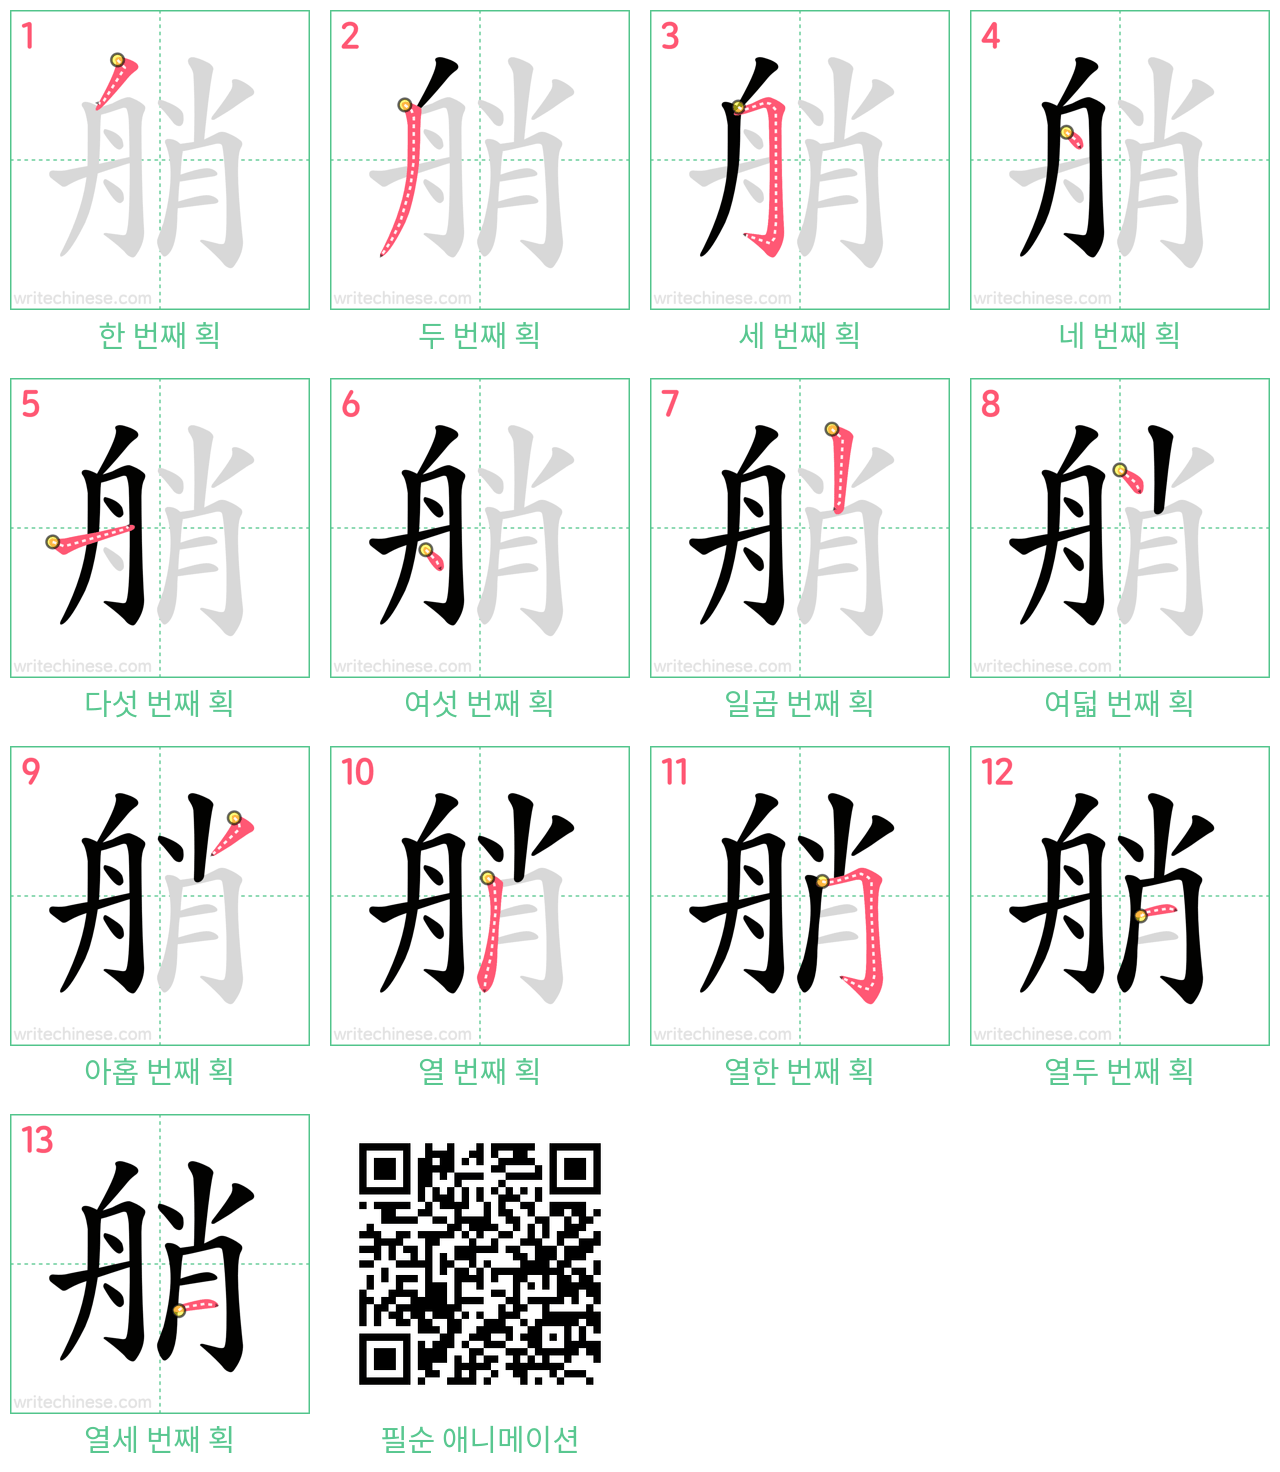 艄 step-by-step stroke order diagrams